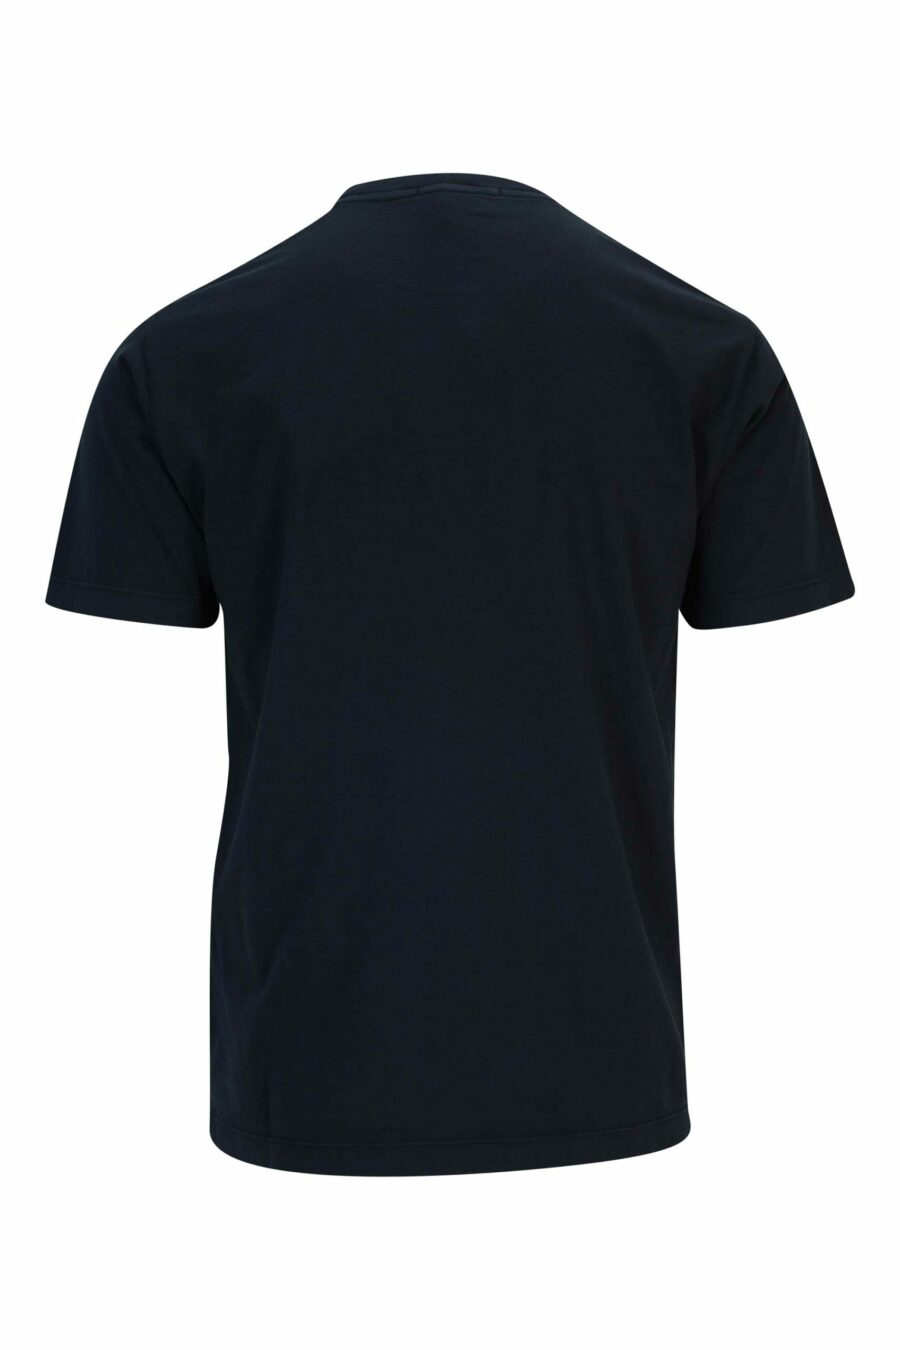 Camiseta azul oscuro con estampado logo brújula centrado - 8052572911934 1 scaled